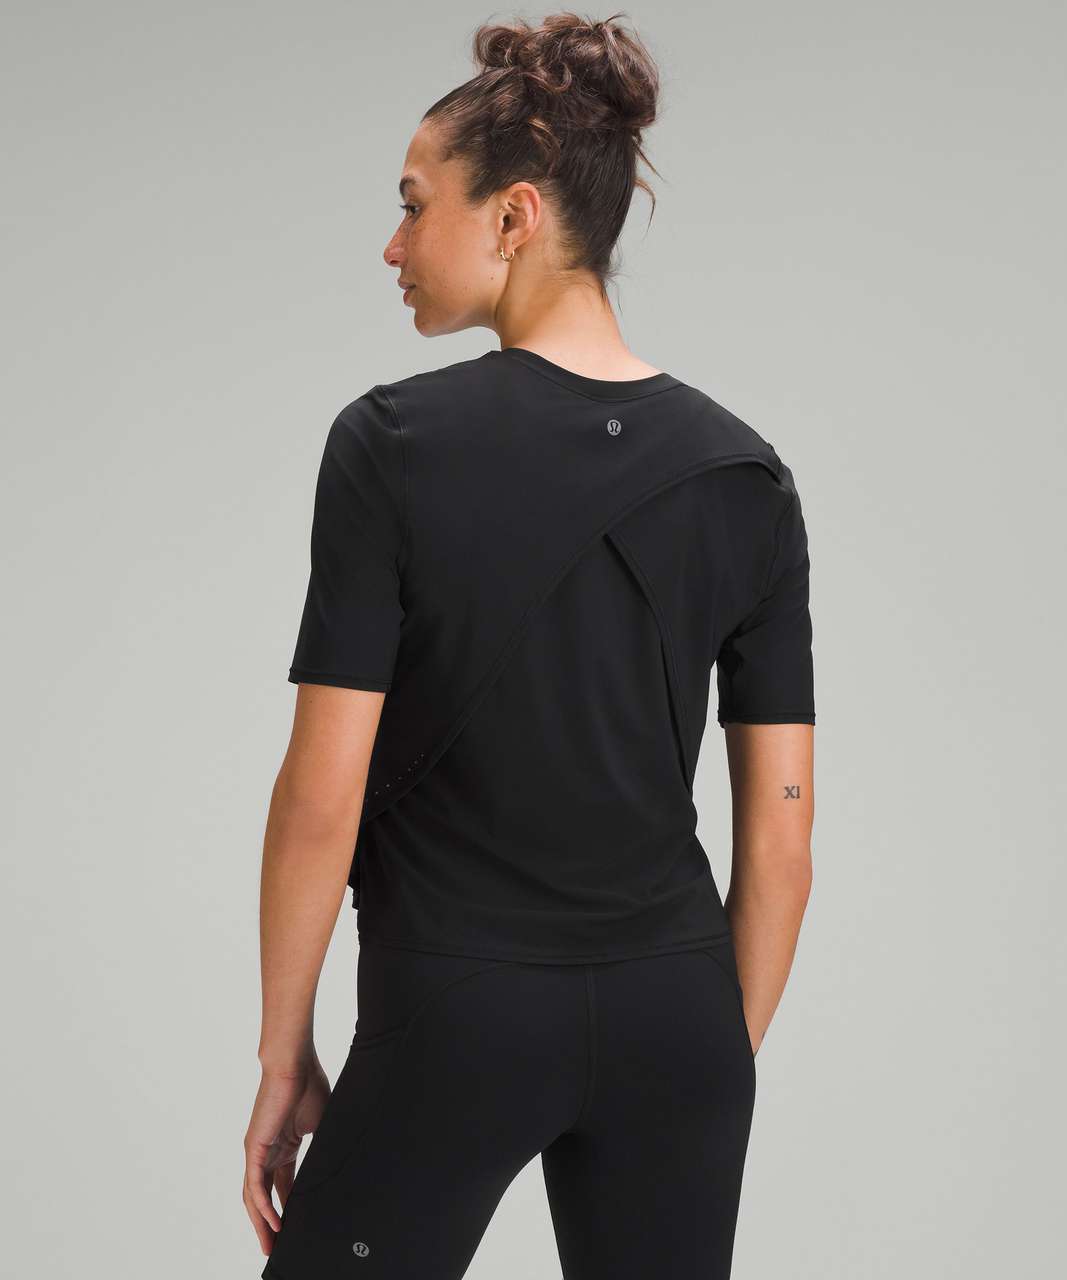 Lululemon UV Protection Fold-Over Running T-Shirt - Black